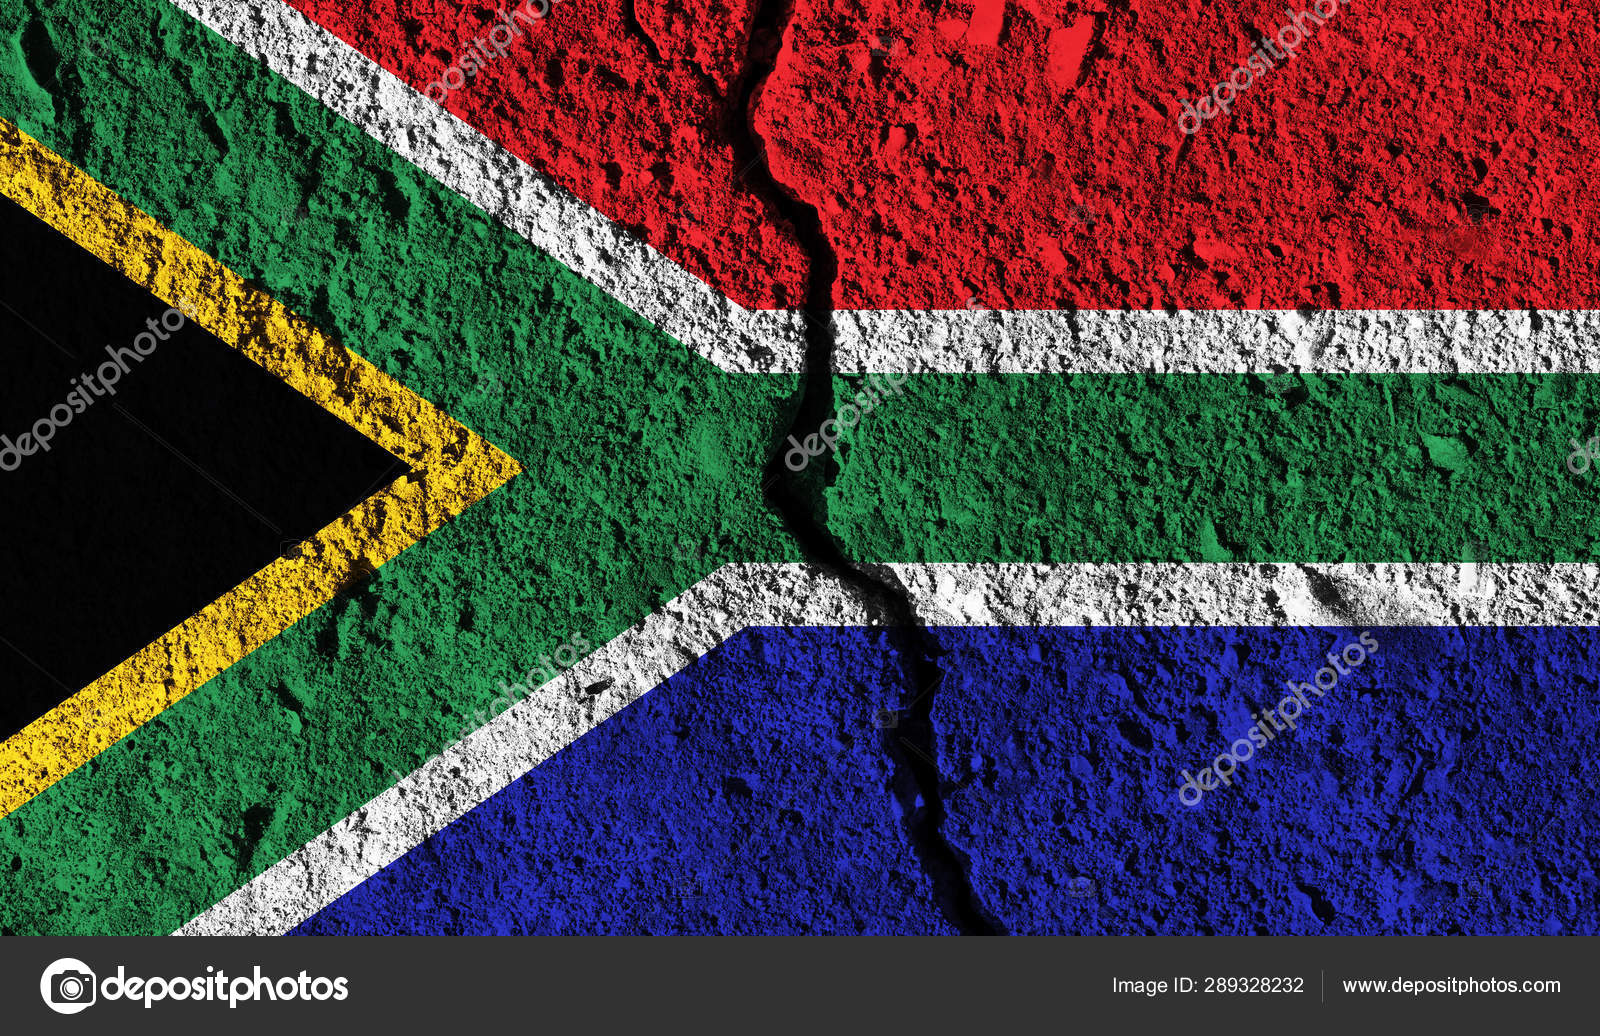 Drapeau Afrique du Sud / South Africa Flag Stock Photo